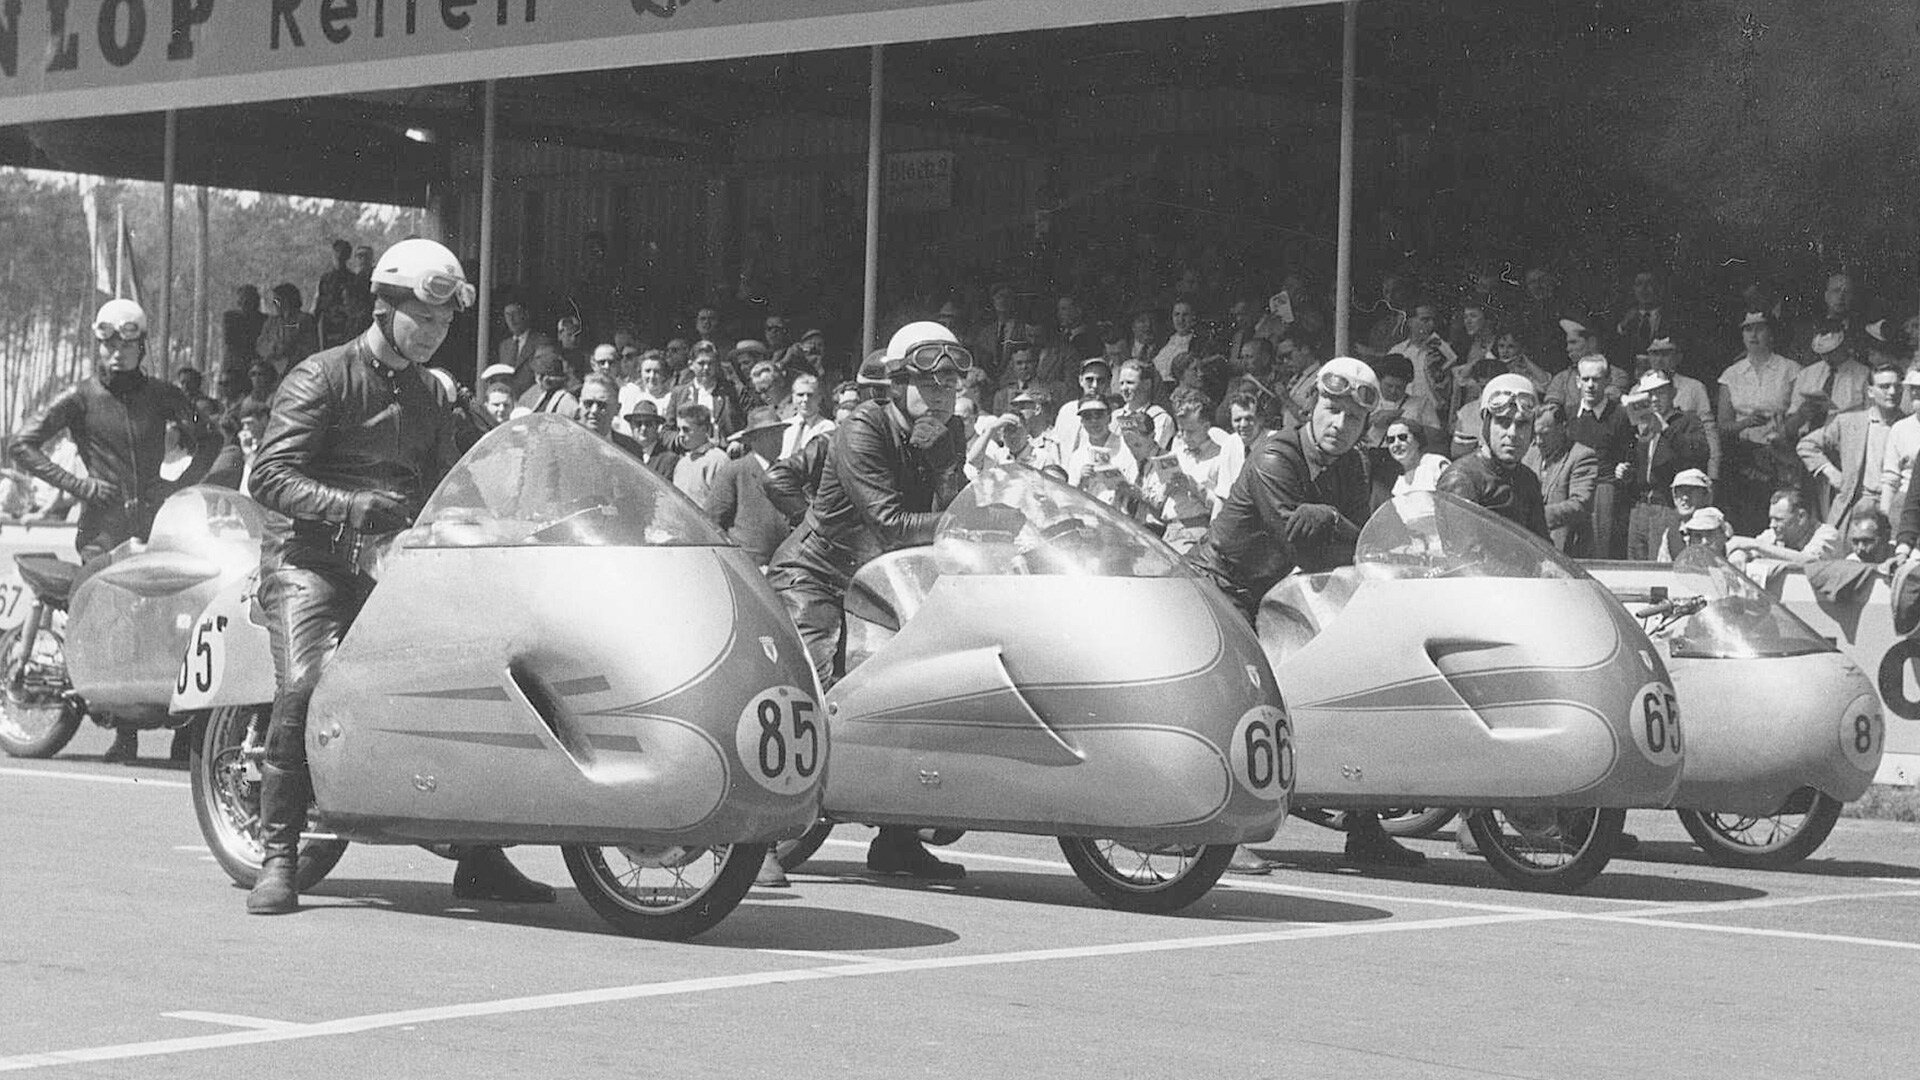 Motocikli podjetja DKW na dirkališču